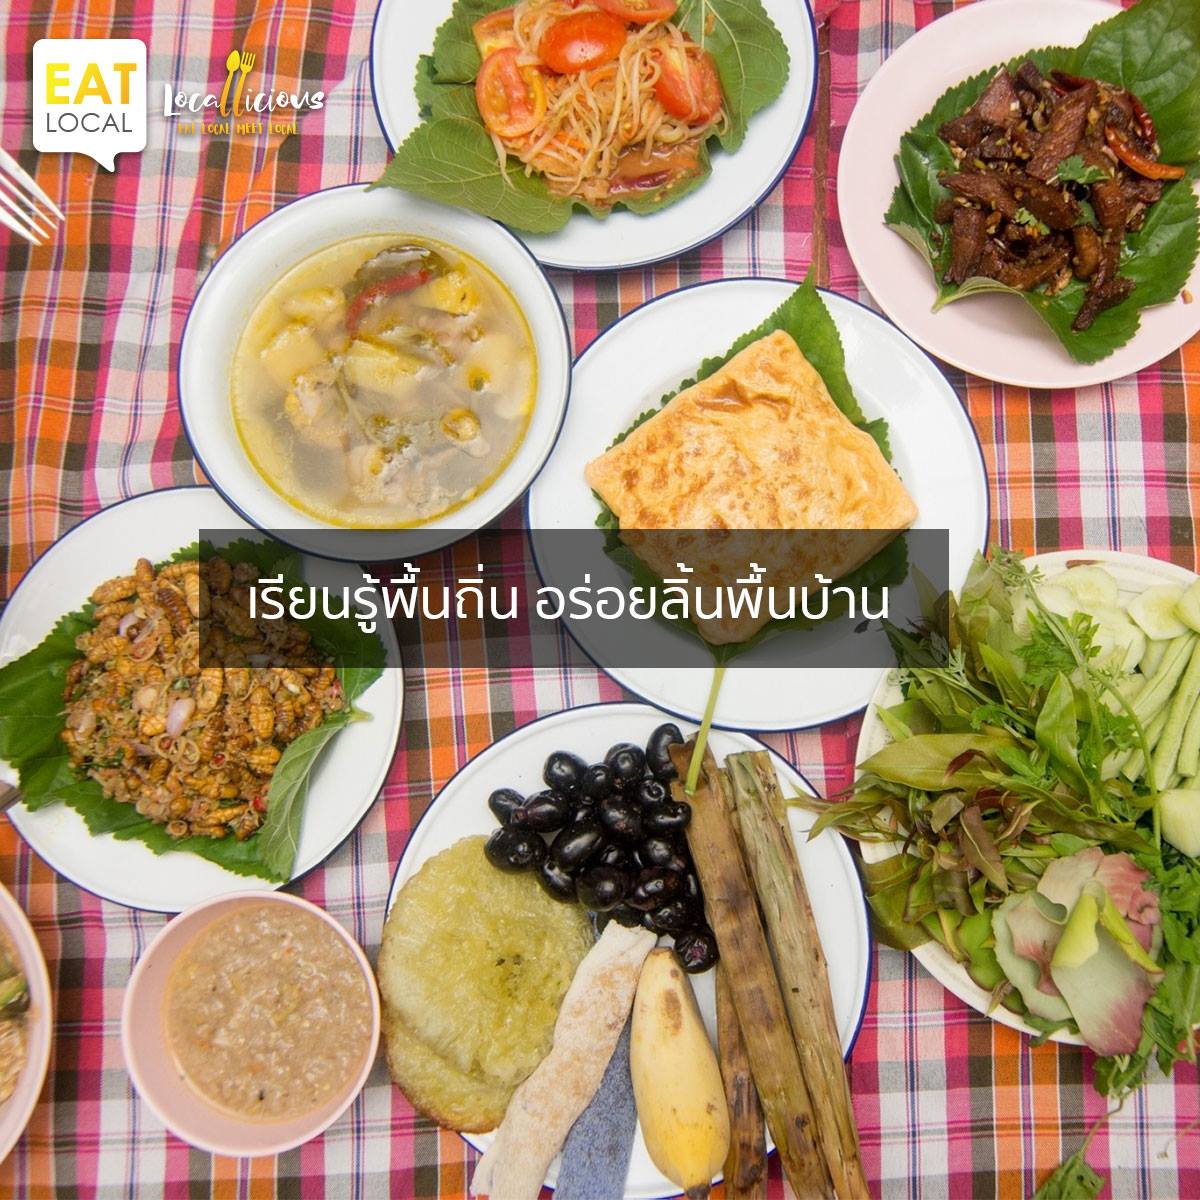 eat locallicious food tourism การท่องเที่ยวแห่งประเทศไทย (ททท.) เส้นทางอาหารถิ่น